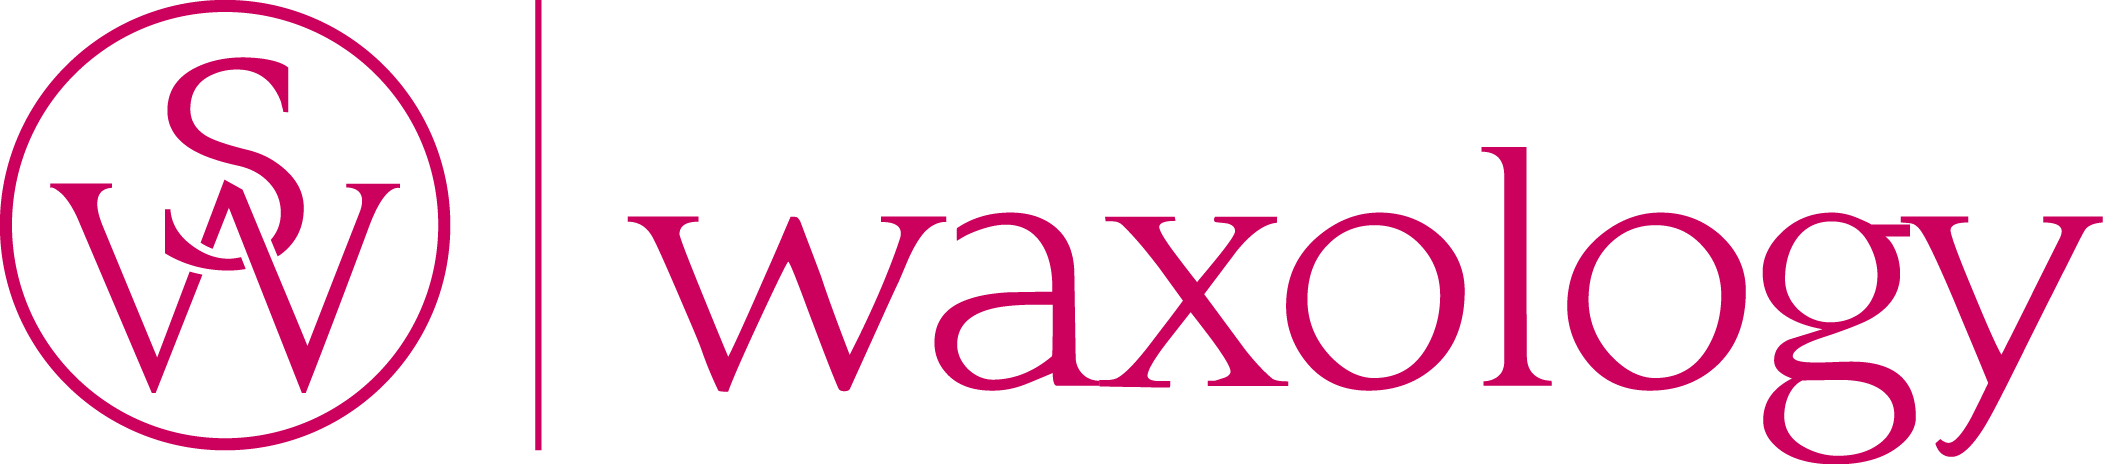 Sweet Waxology